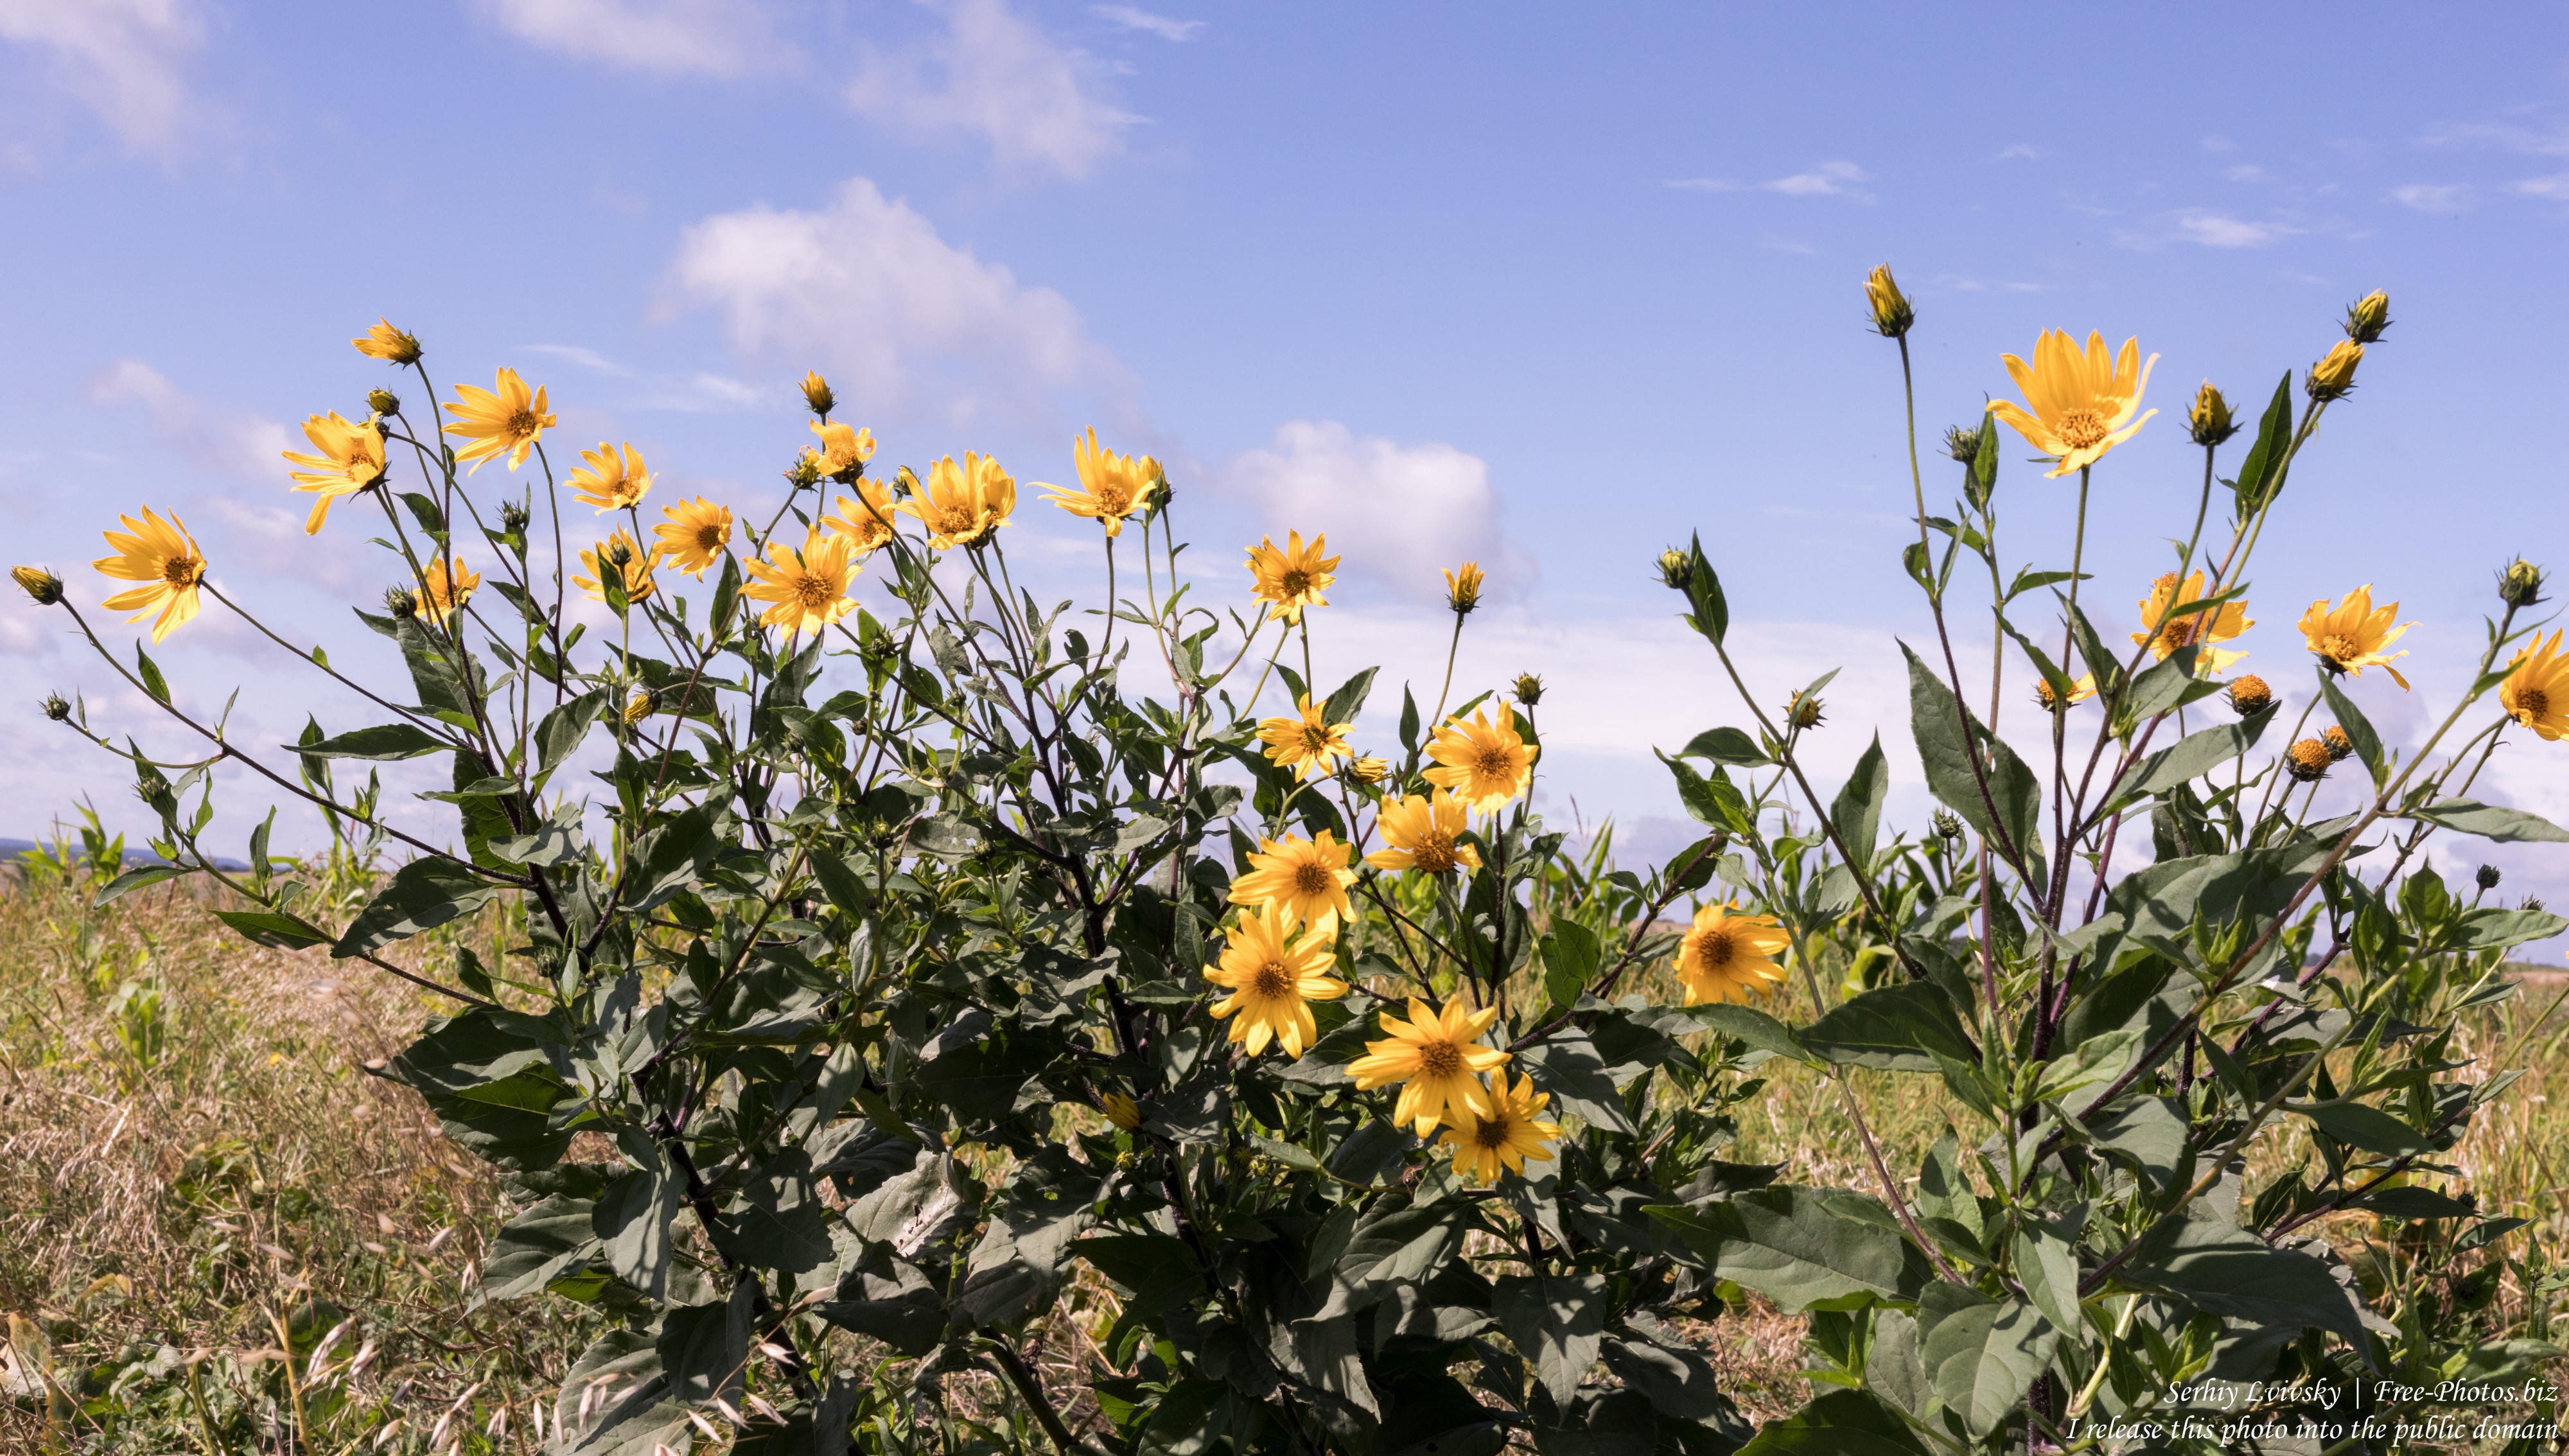 yellow flowers in a field in Rivne region of Ukraine in August 2019